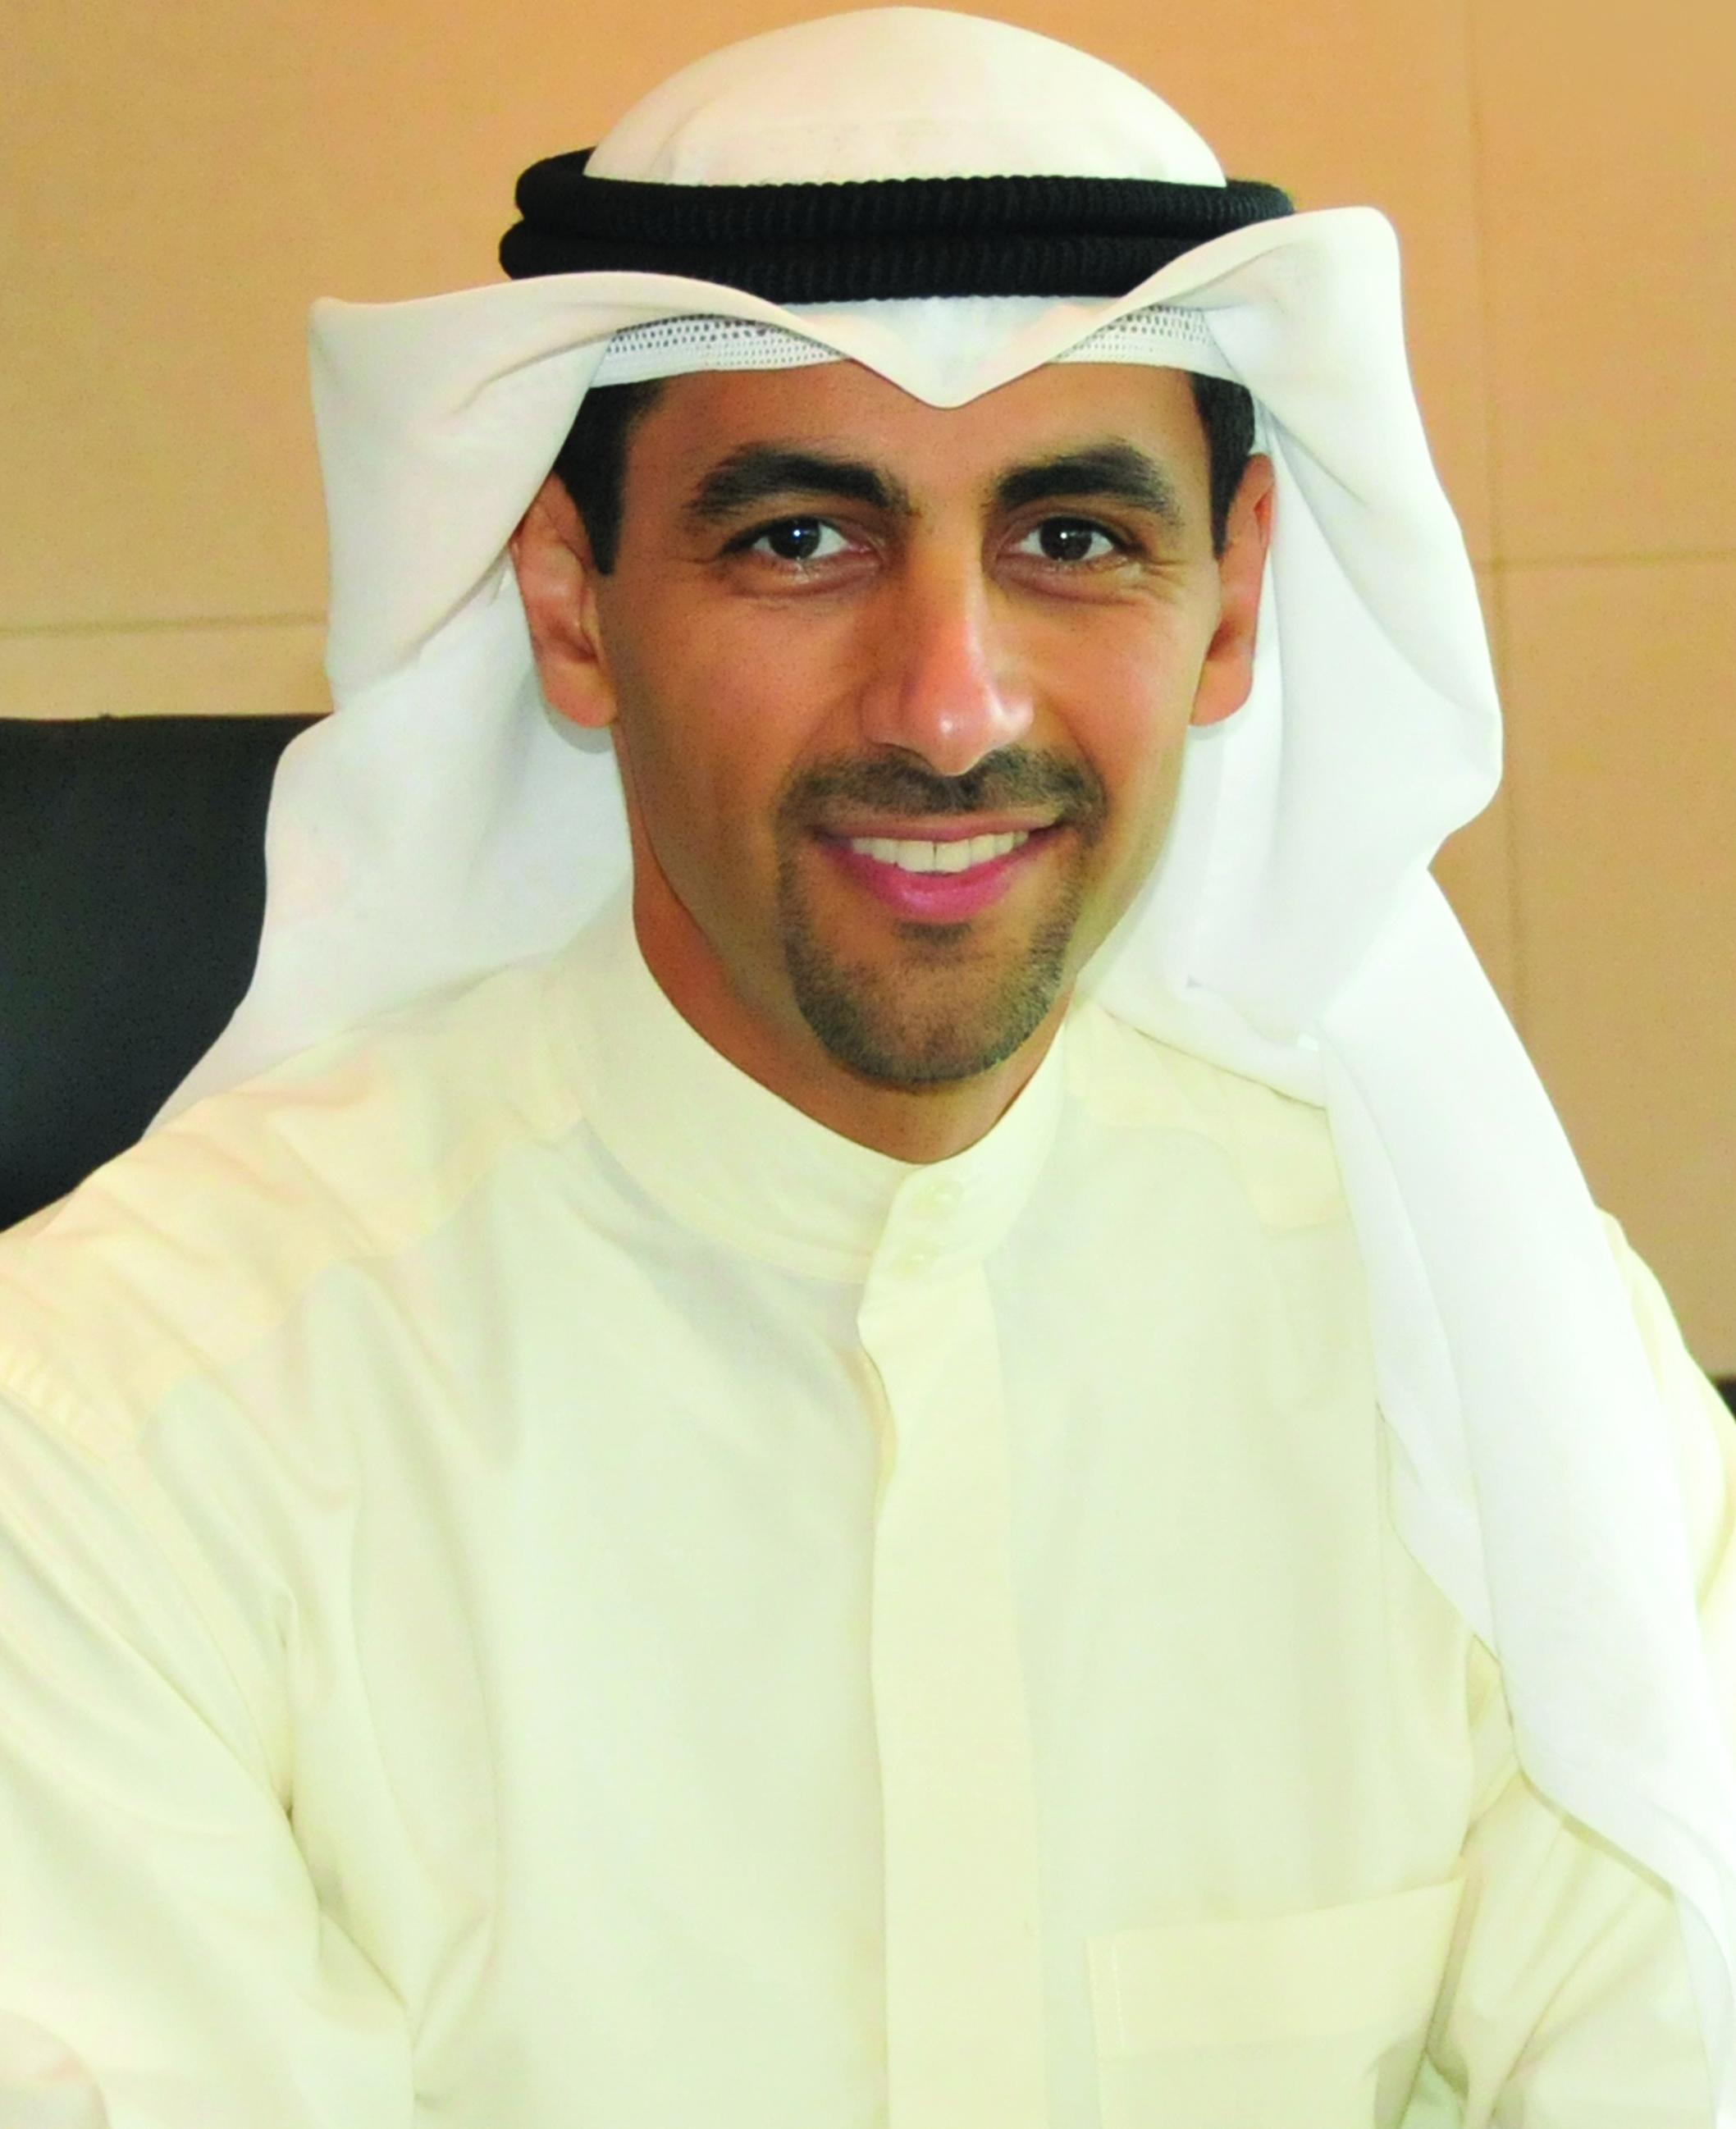 الرئيس التنفيذي لشركة (كوفبك) الشيخ نواف سعود الصباح لوكالة الانباء الكويتية (كونا)